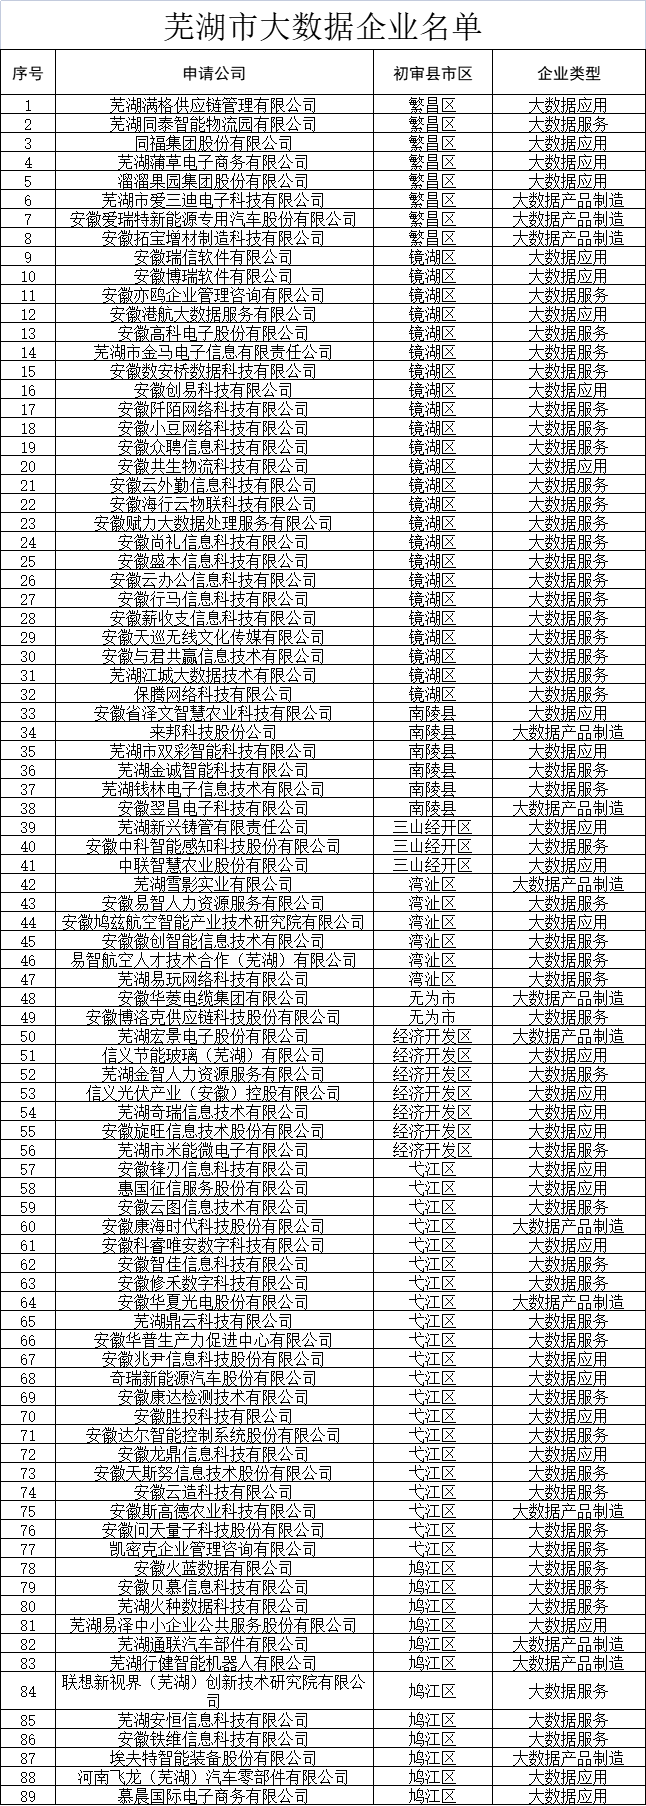 芜湖市大数据企业认定名单